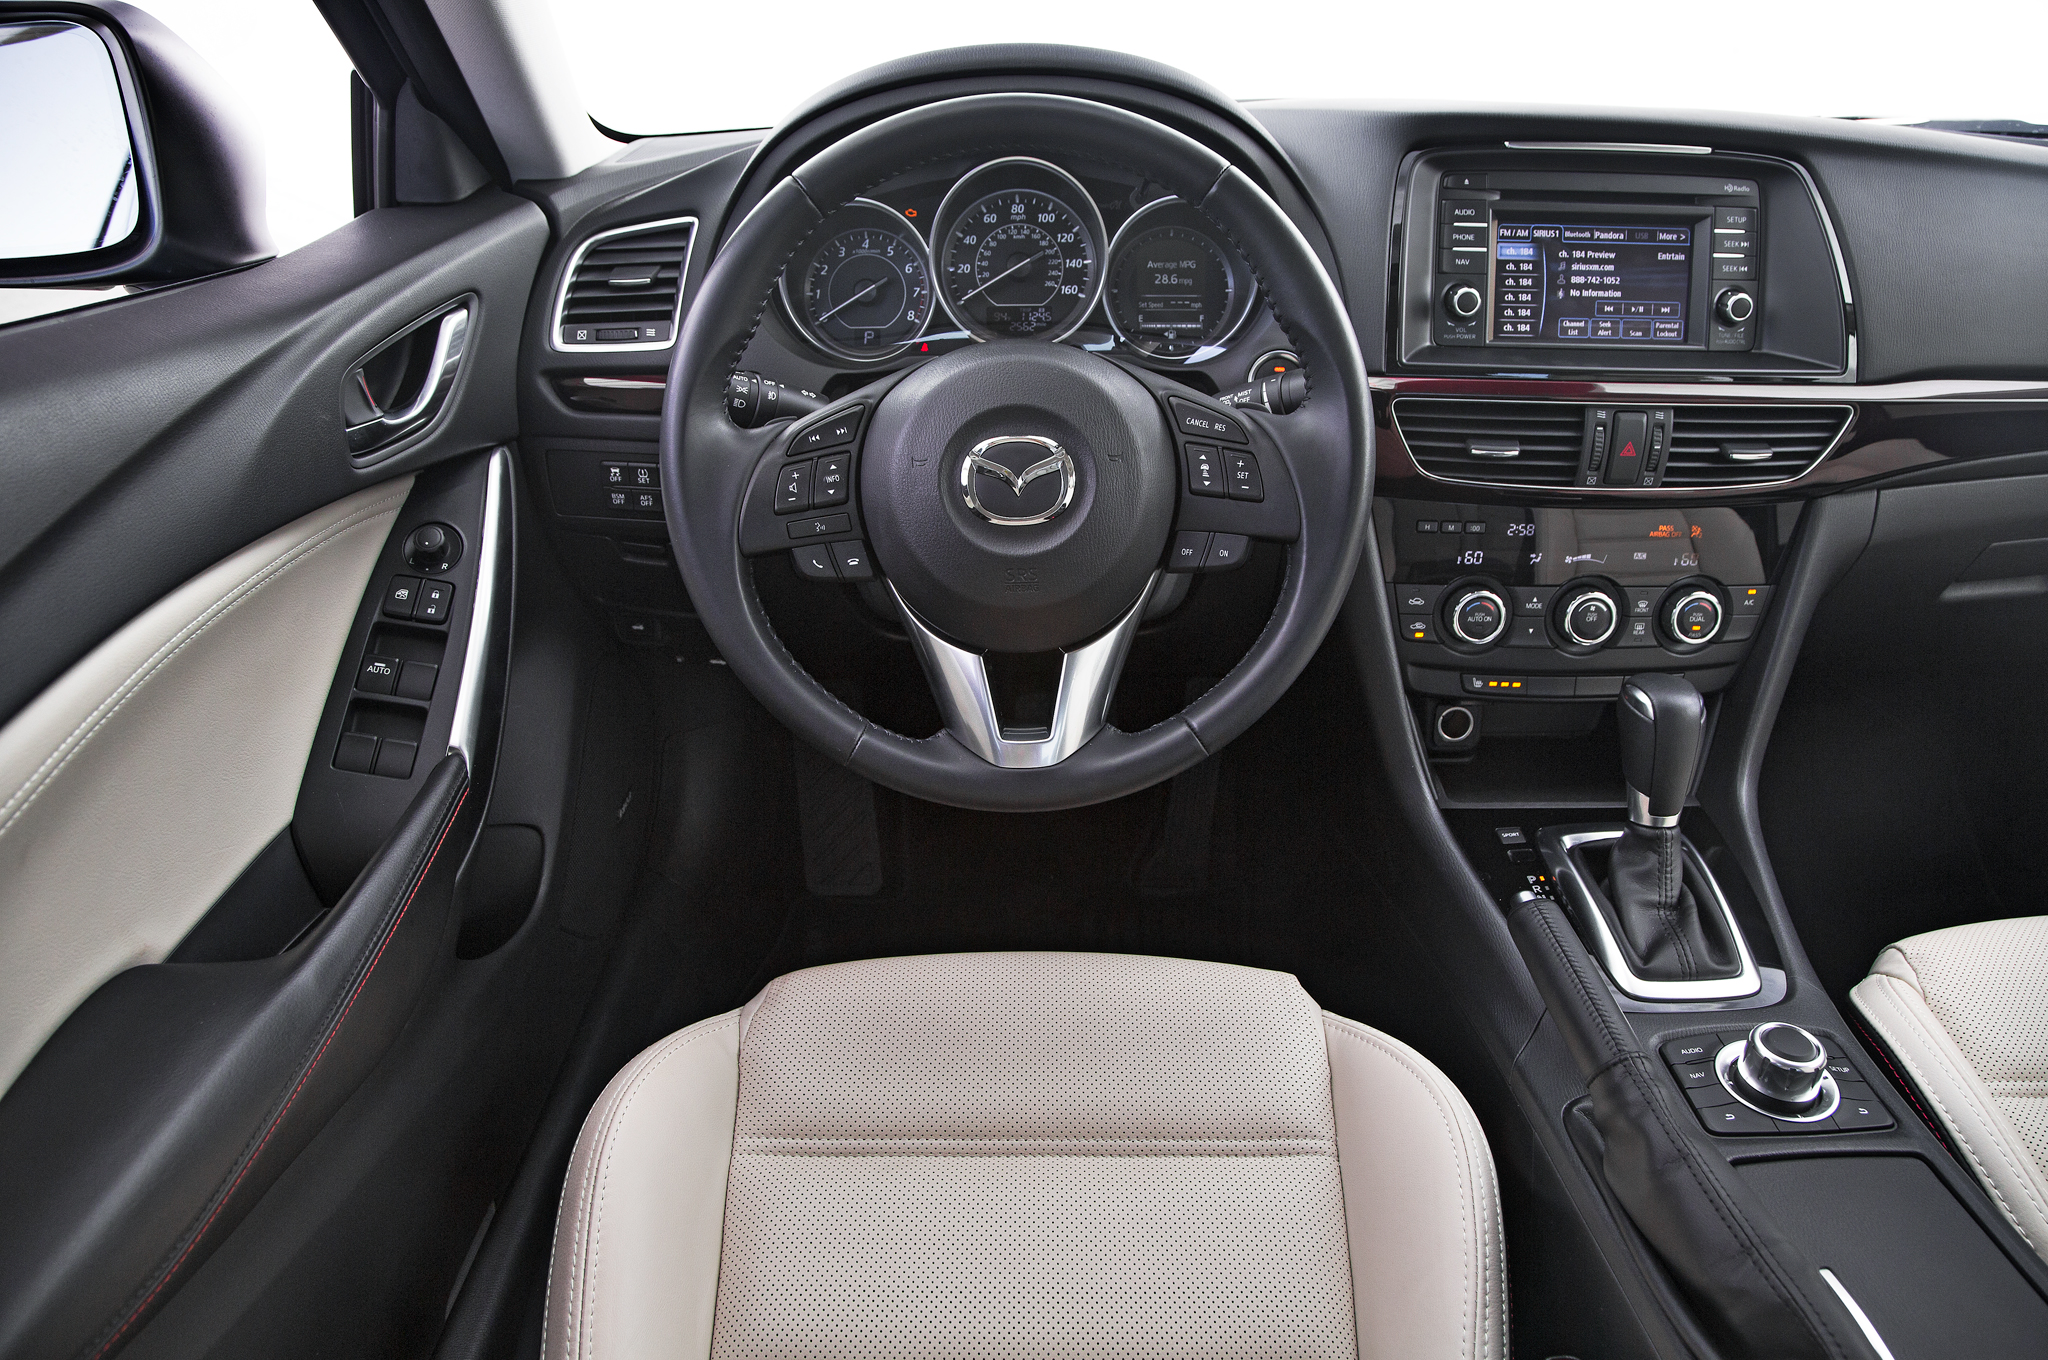 Thế mạnh của Mazda6 khi so sánh xe ô tô là hệ thống phanh tự động và hệ thống cảnh báo va chạm phía trước